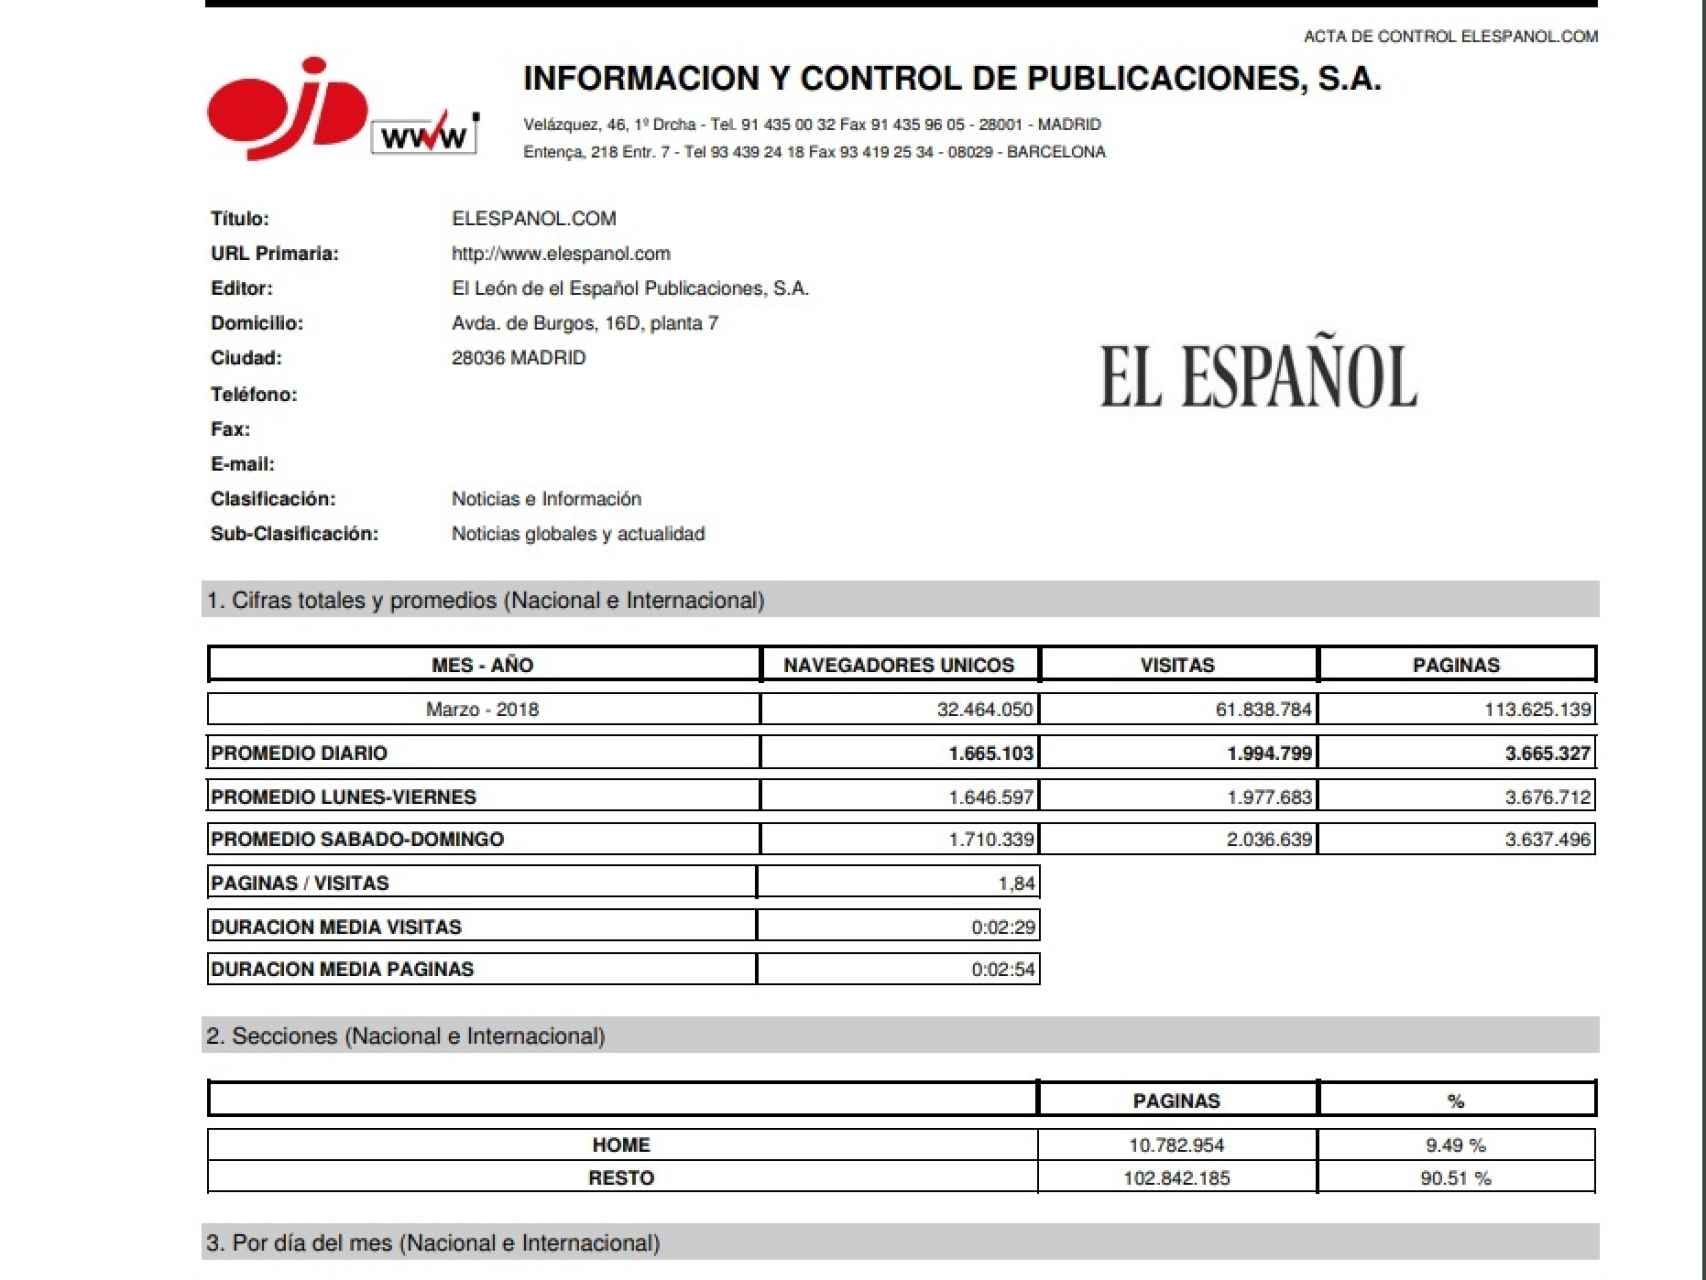 Acta de la OJD que certifica los 32,4 millones de usuarios de EL ESPAÑOL.